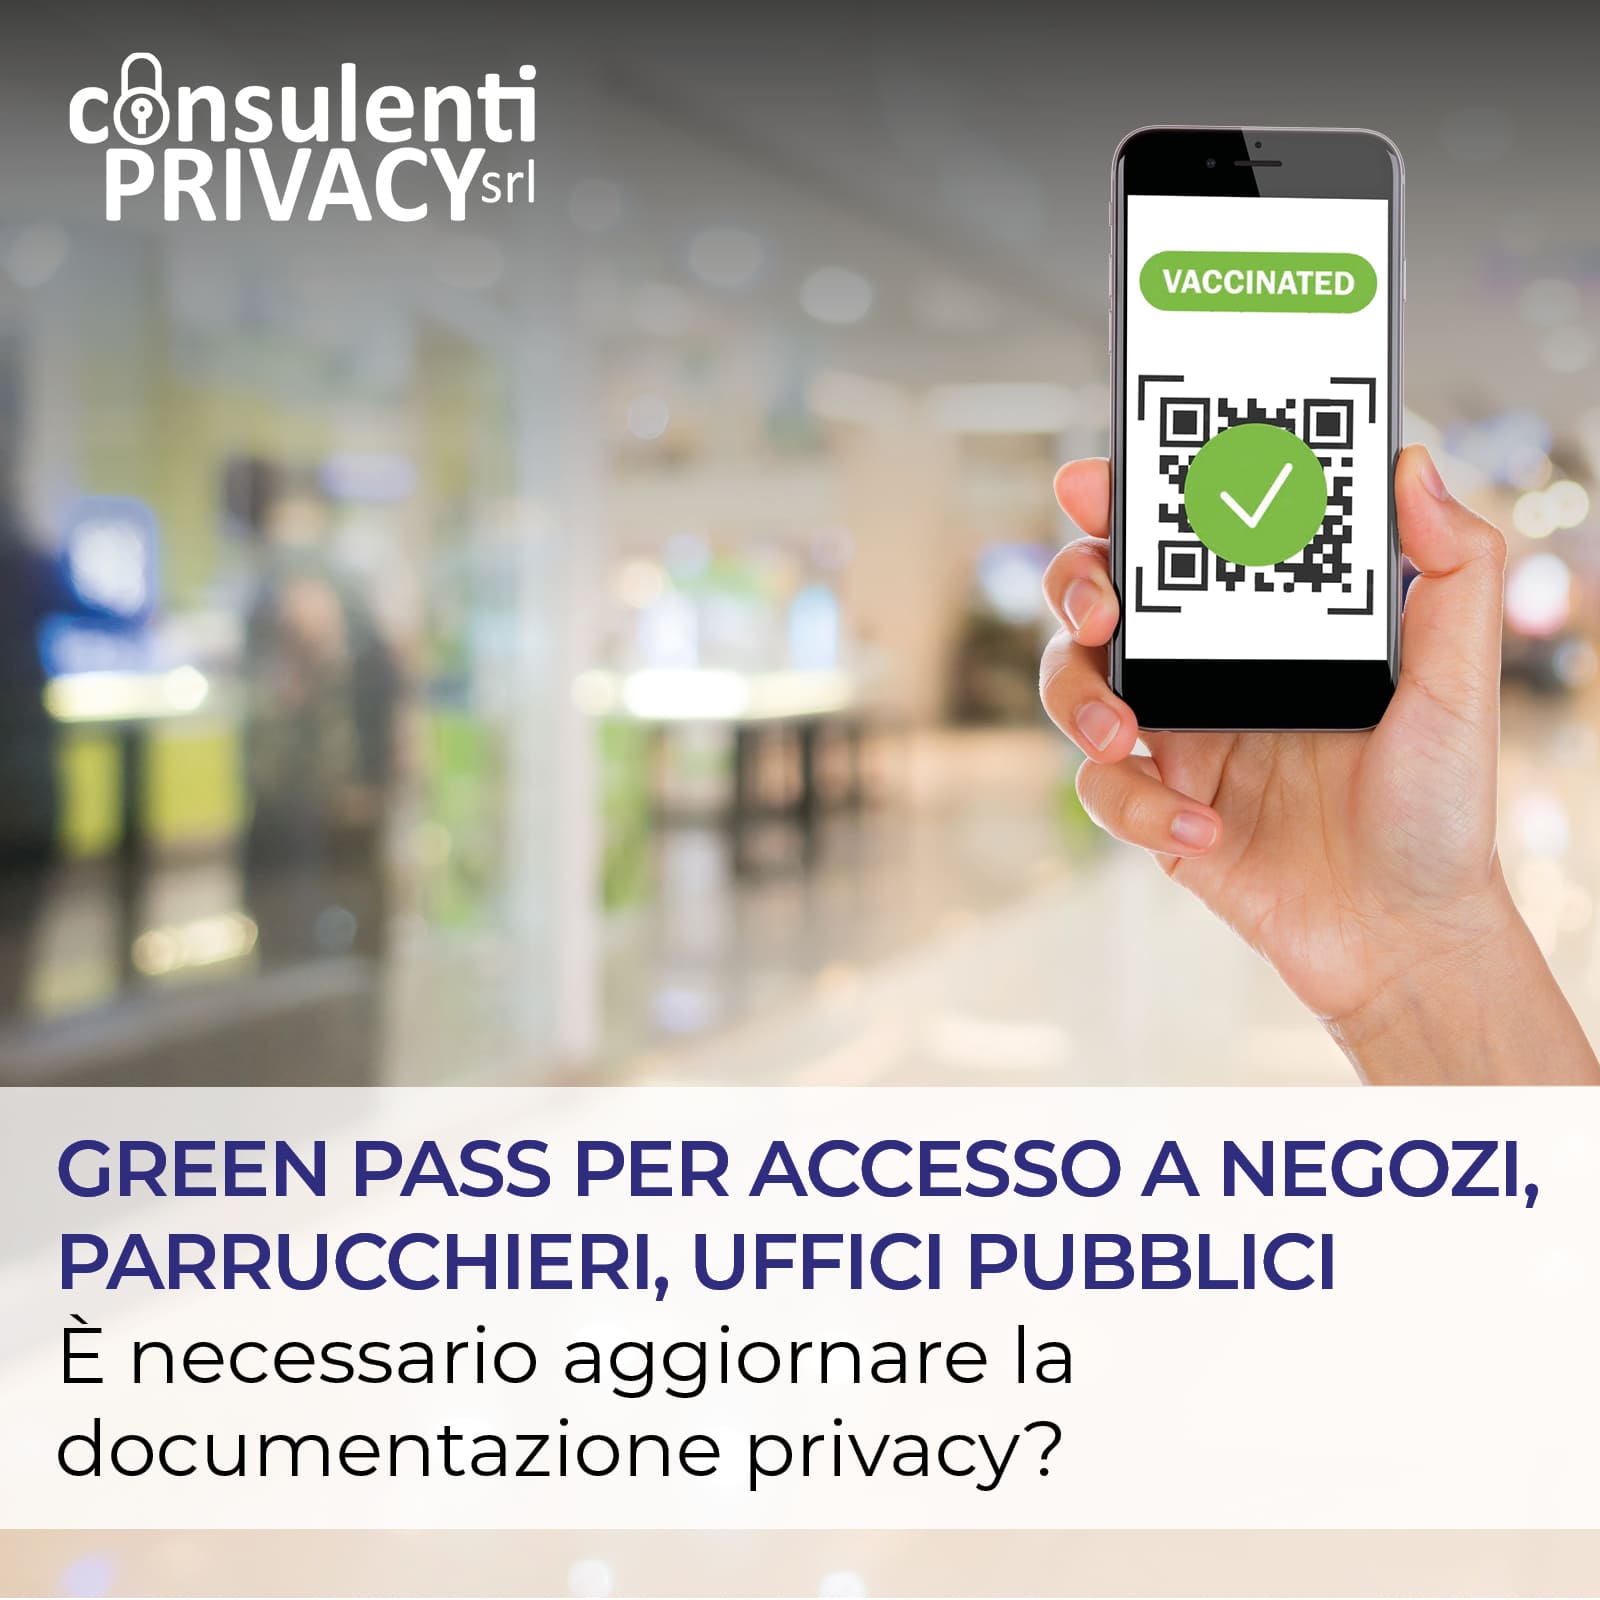 Green Pass per accesso a negozi, parrucchieri, uffici pubblici: è necessario aggiornare la documentazione privacy?